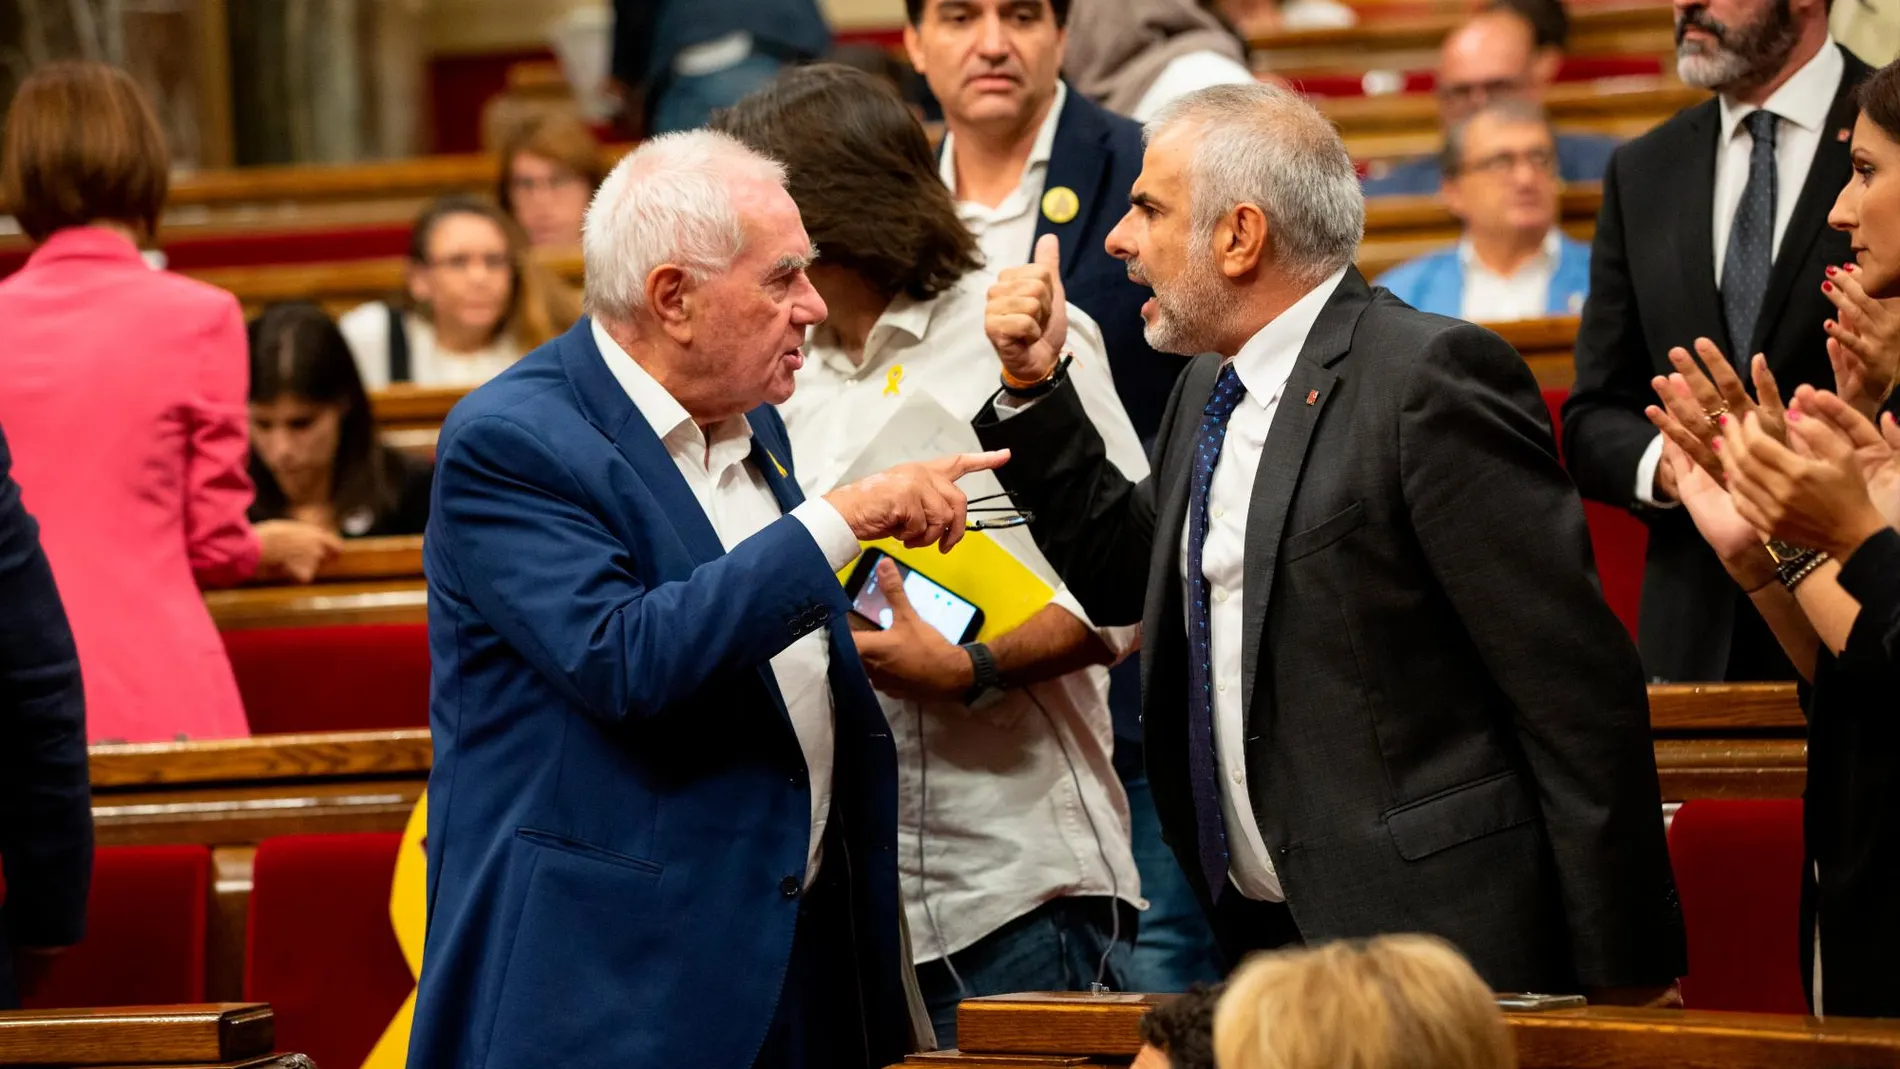 El portavoz de Ciudadanos en el Parlament, Carlos Carrizosa, y el diputado de ERC Ernest Maragall discuten durante el Pleno/Foto: David Zorrakino / Europa Press